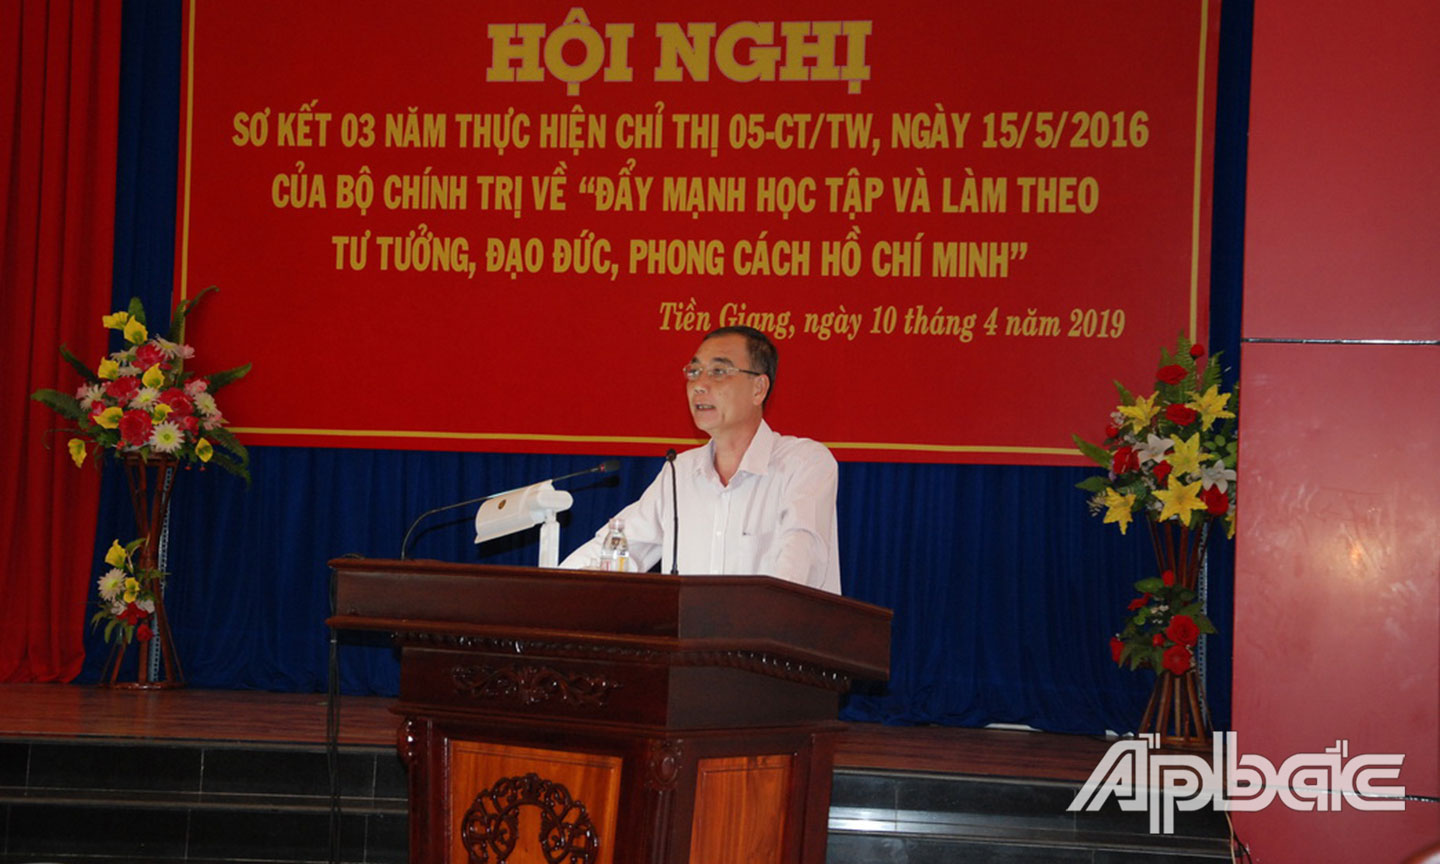 Đồng chí Nguyễn Thanh Hiền, Phó Trưởng ban Thường trực Ban Tuyên giáo Tỉnh uỷ  phát biểu tại Hội nghị sơ kết 03 năm thực hiện Chỉ thị 05-CT/TW của Bộ Chính trị